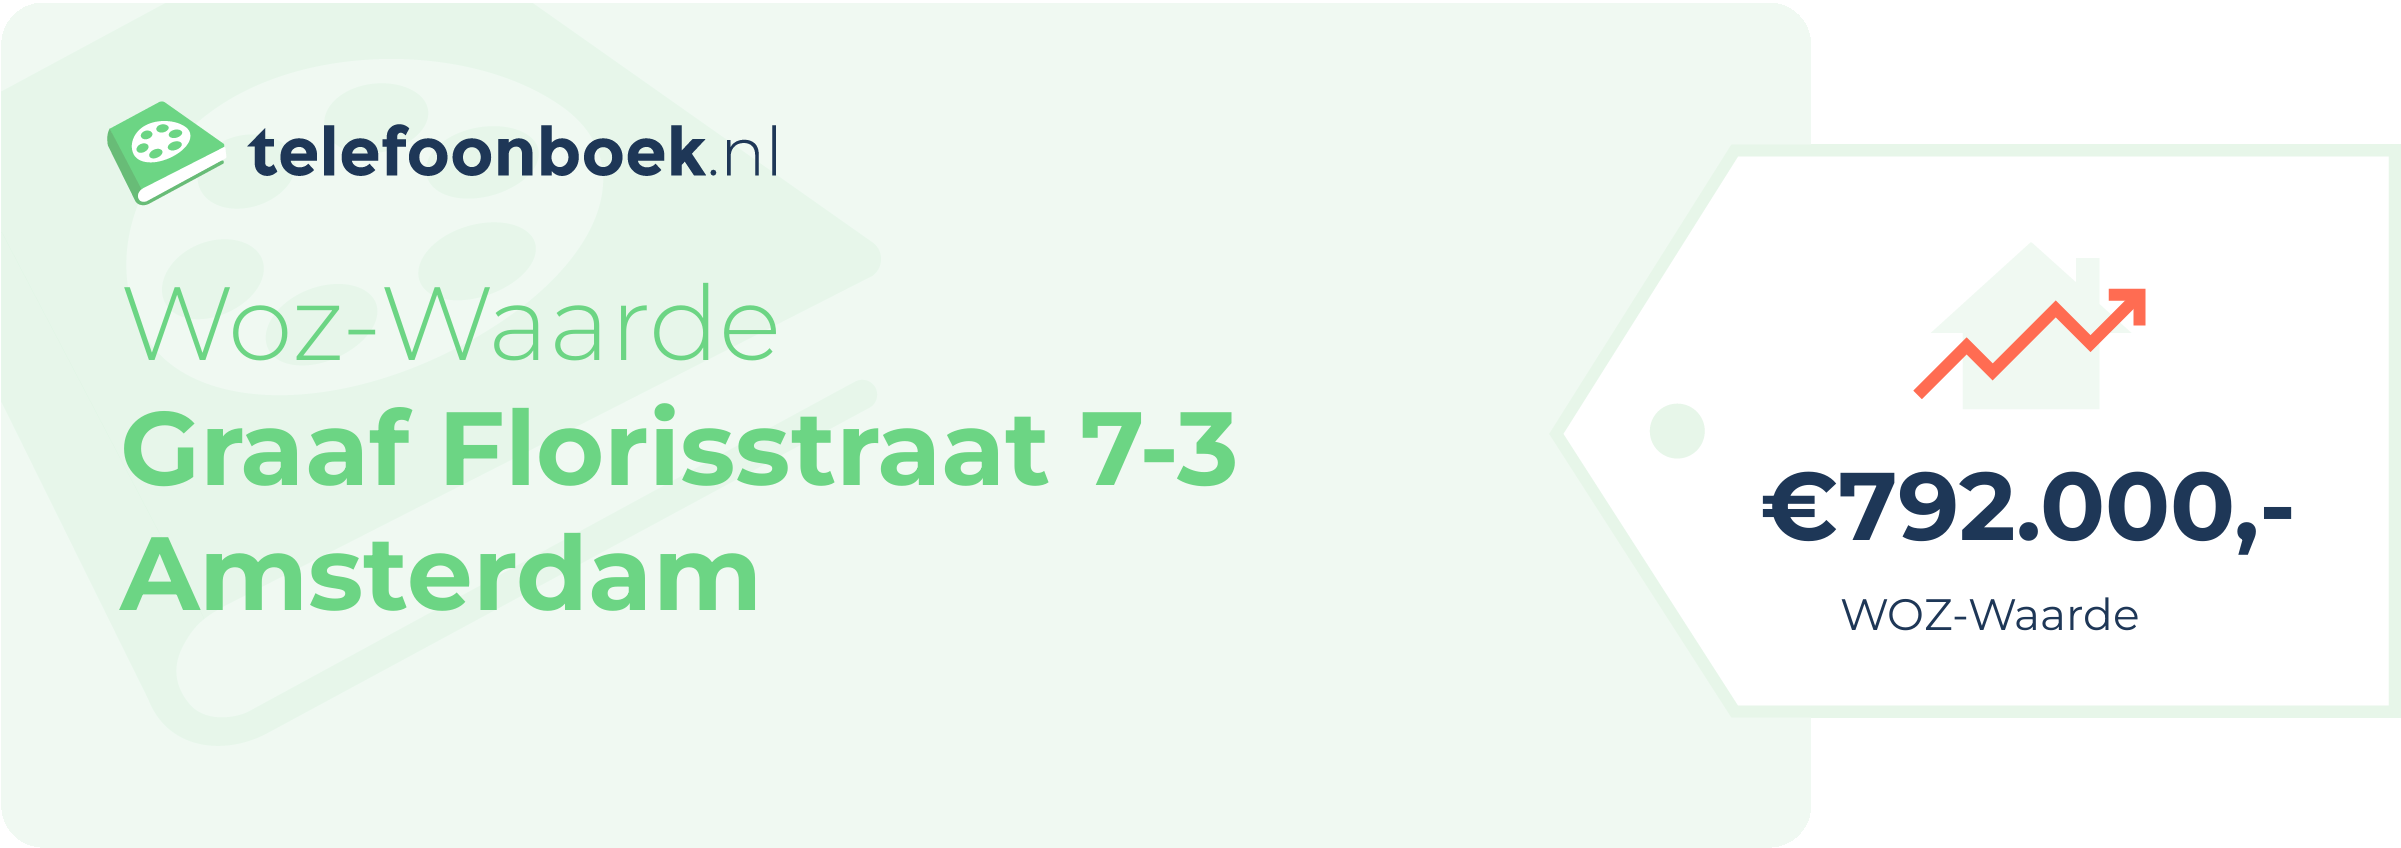 WOZ-waarde Graaf Florisstraat 7-3 Amsterdam